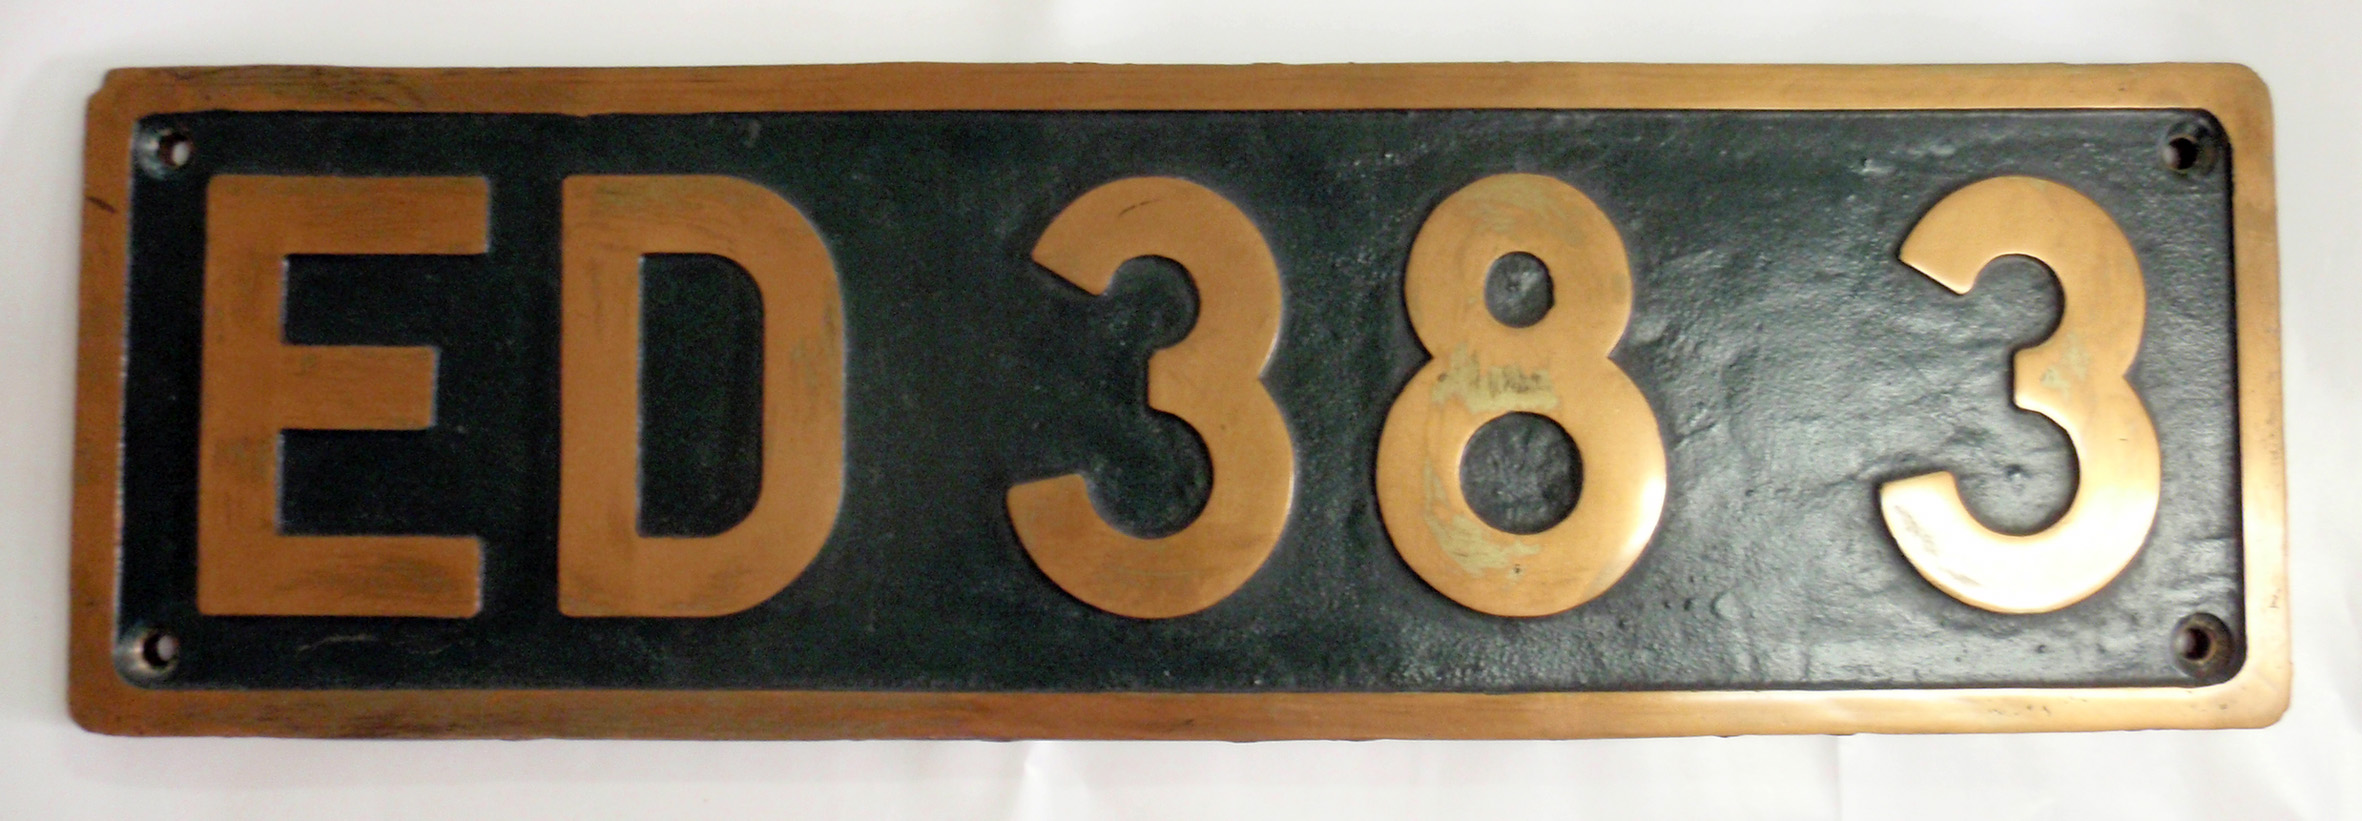 「ED383」ナンバープレート